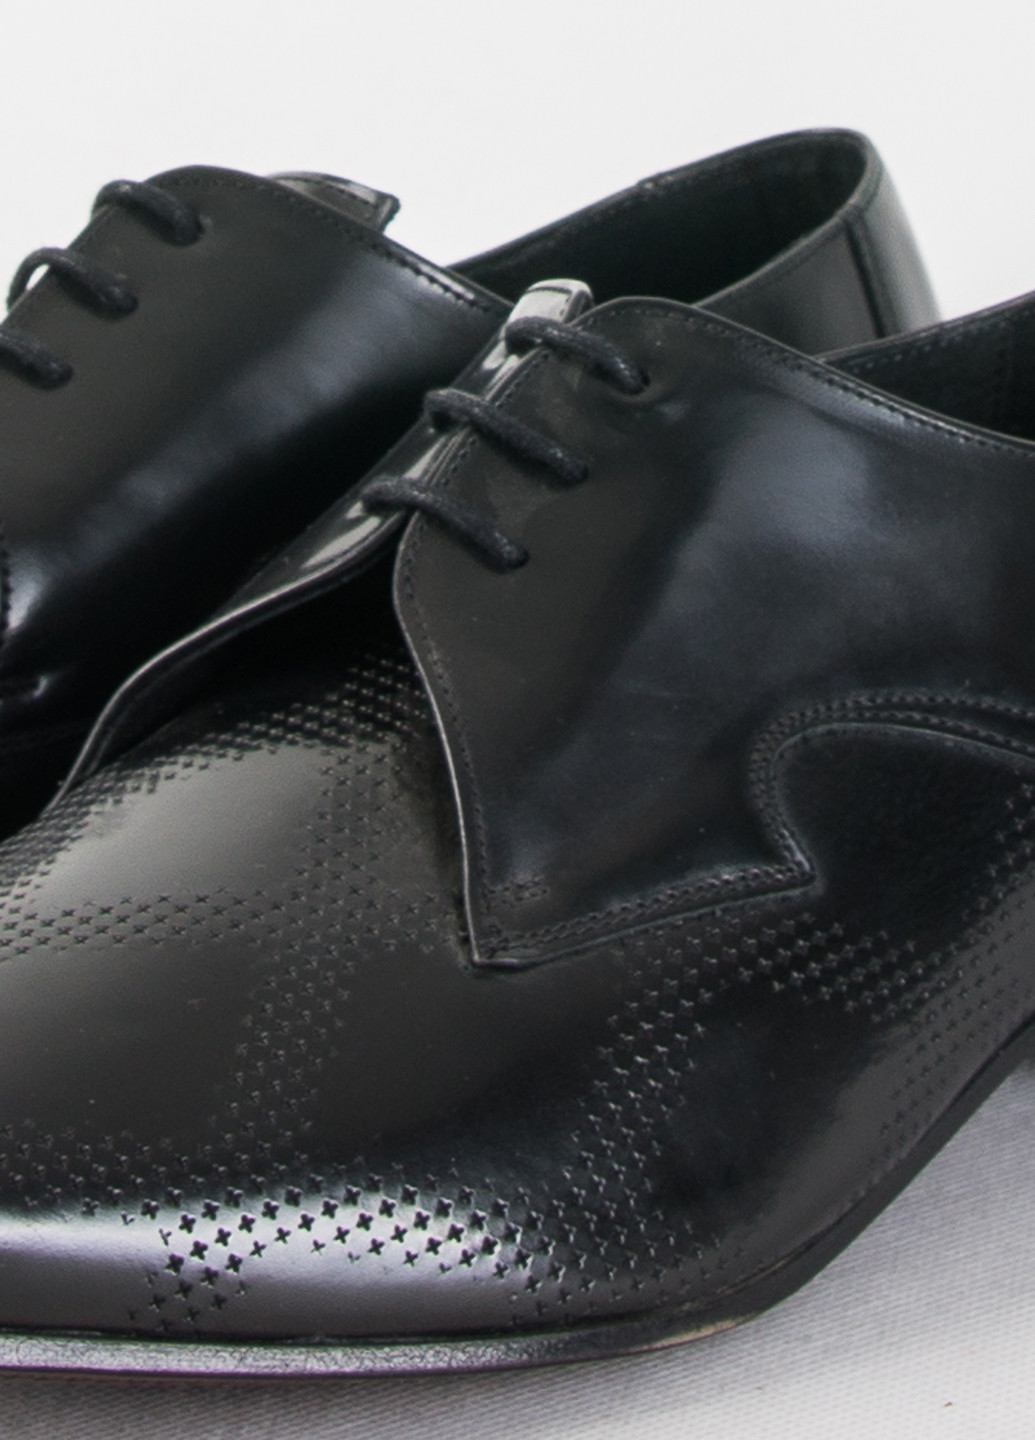 Черные классические туфли Jeffery West на шнурках